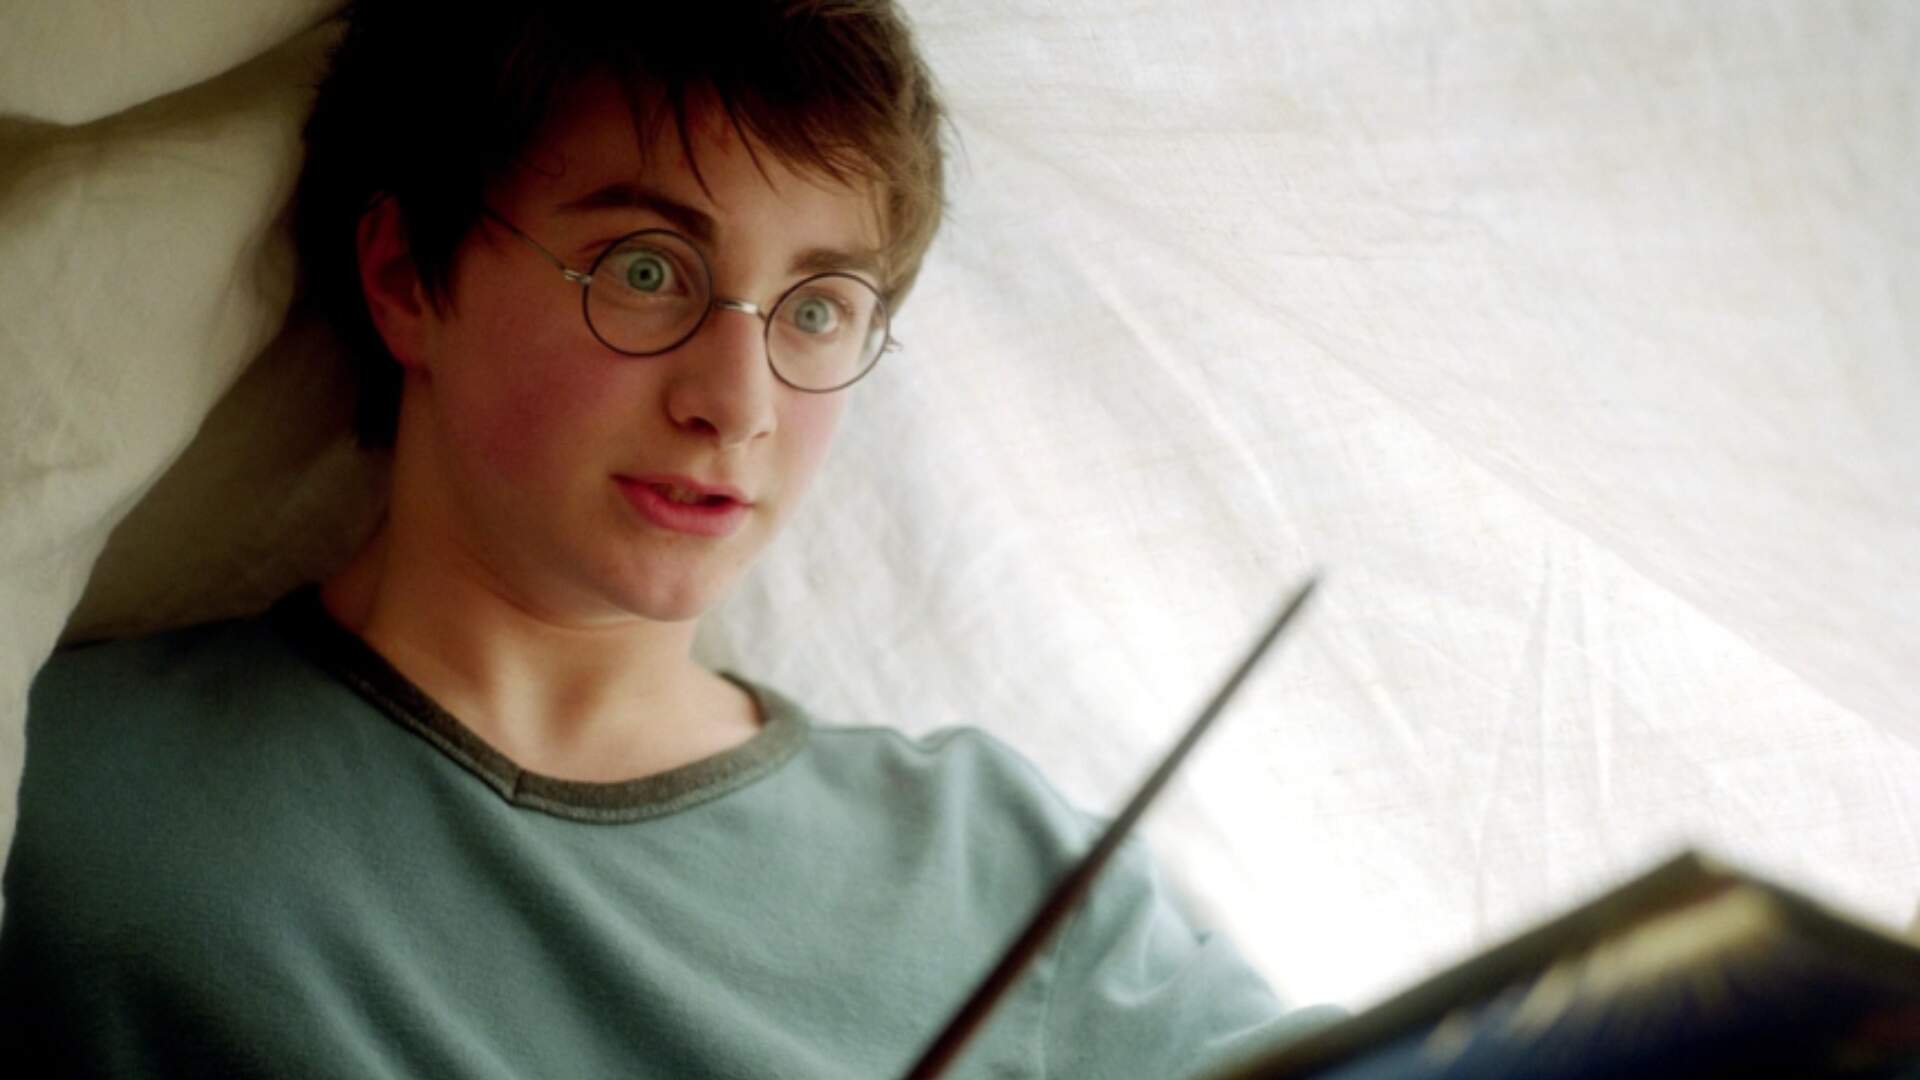 Harry Potter: Daniel Radcliffe explica ausência em futura série da Max: “Desejo a eles toda a sorte do mundo” - Metropolitana FM